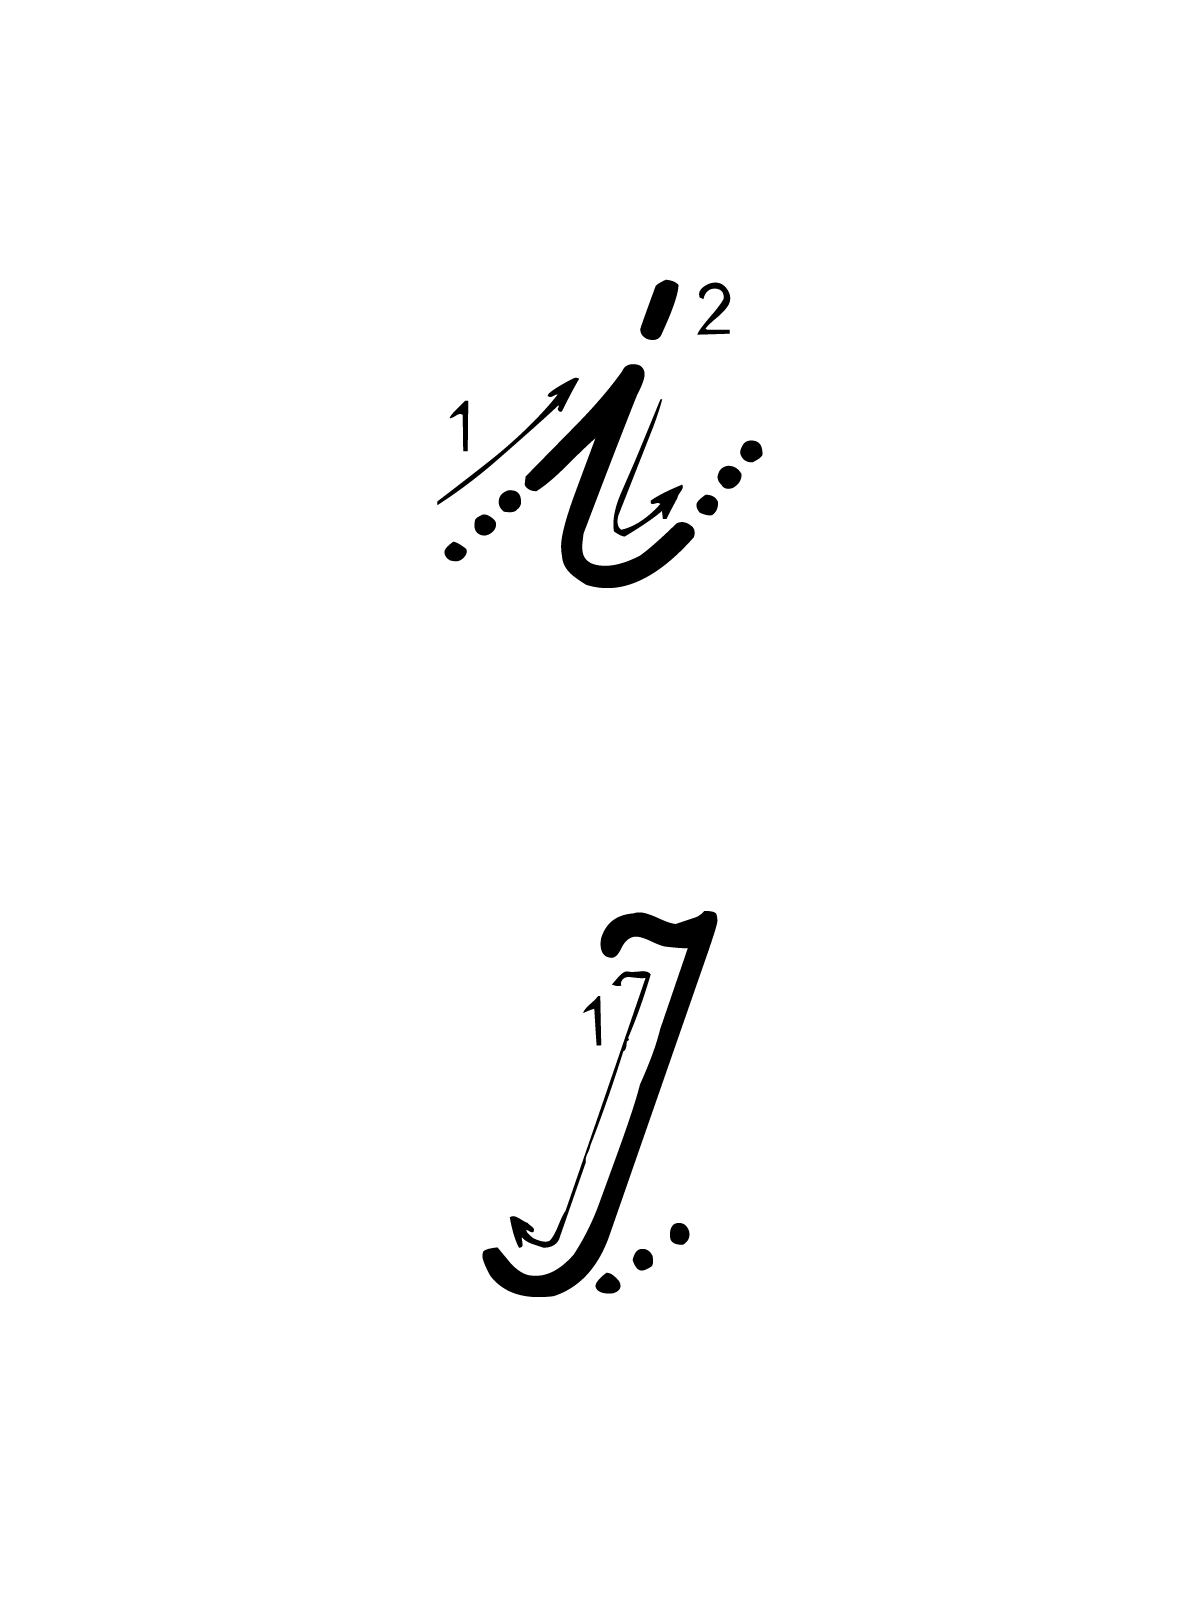 Lettere e numeri - Lettera I con indicazioni movimento corsivo maiuscolo e minuscolo